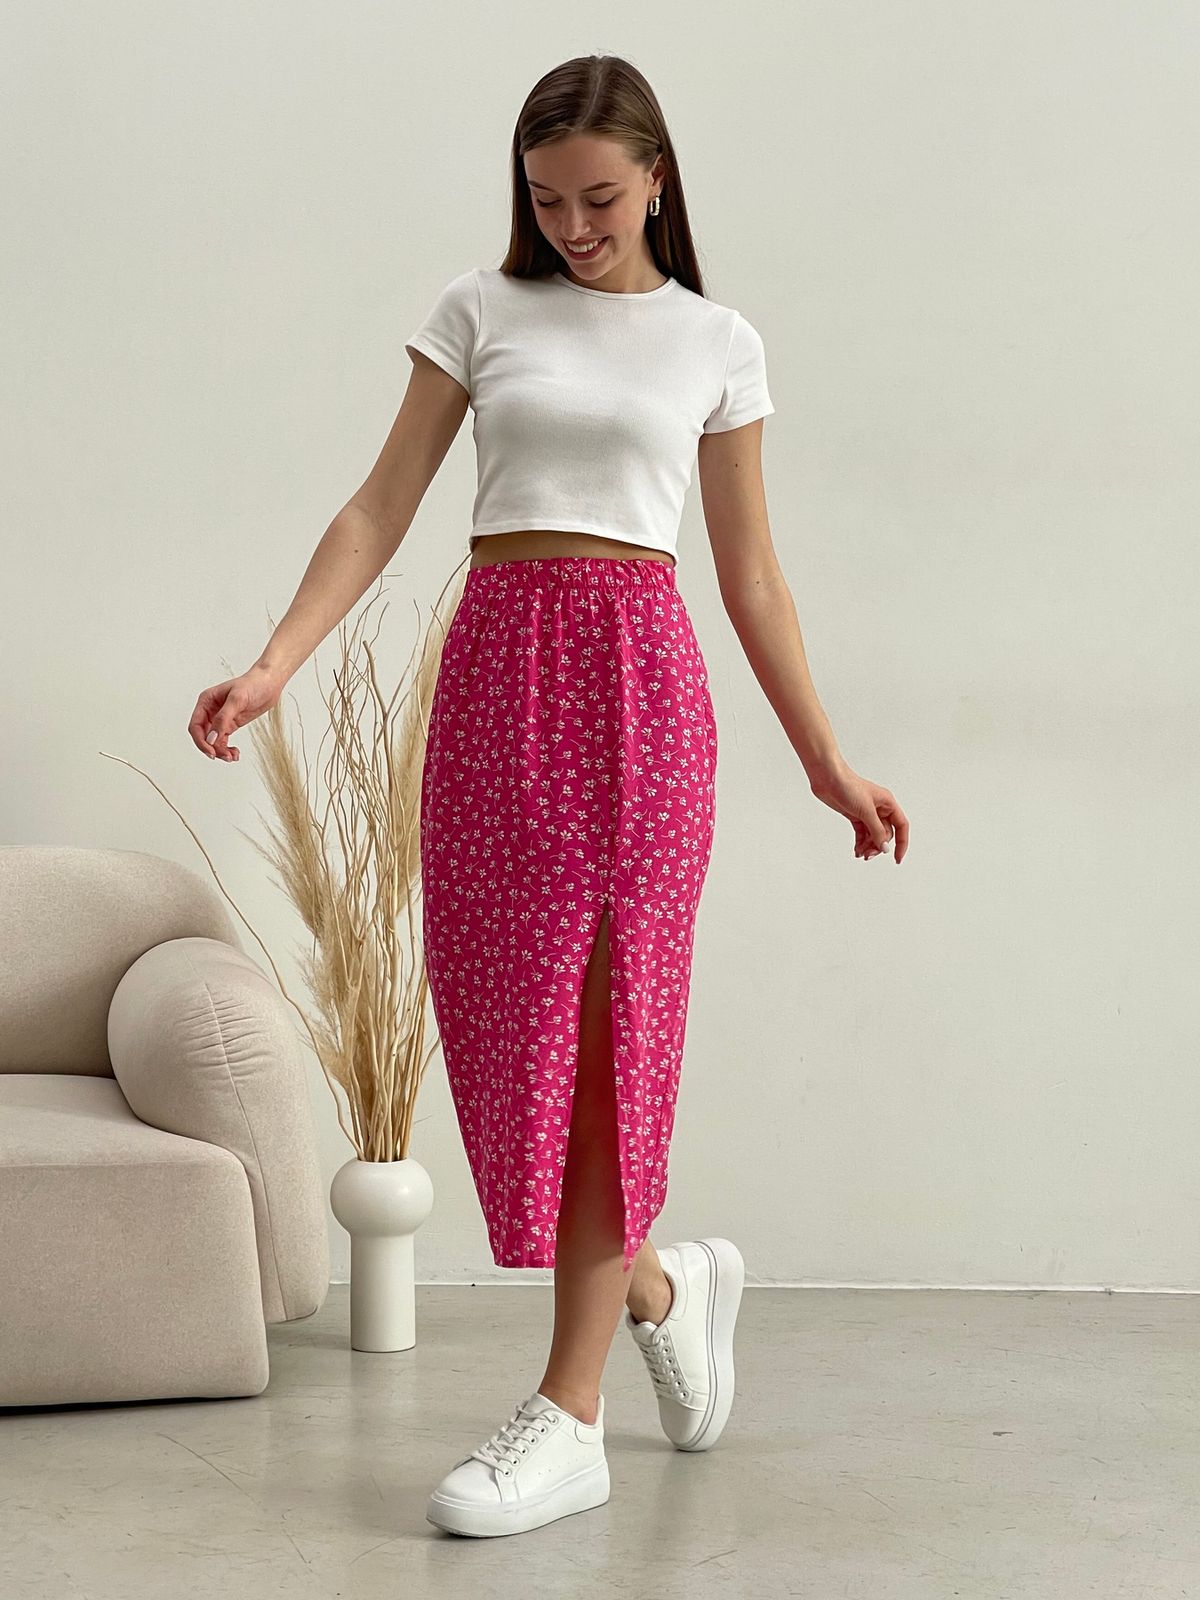 Купить Длинная женская юбка с разрезом в цветочек розовая Merlini Лакко 400001263 размер 42-44 (S-M) в интернет-магазине